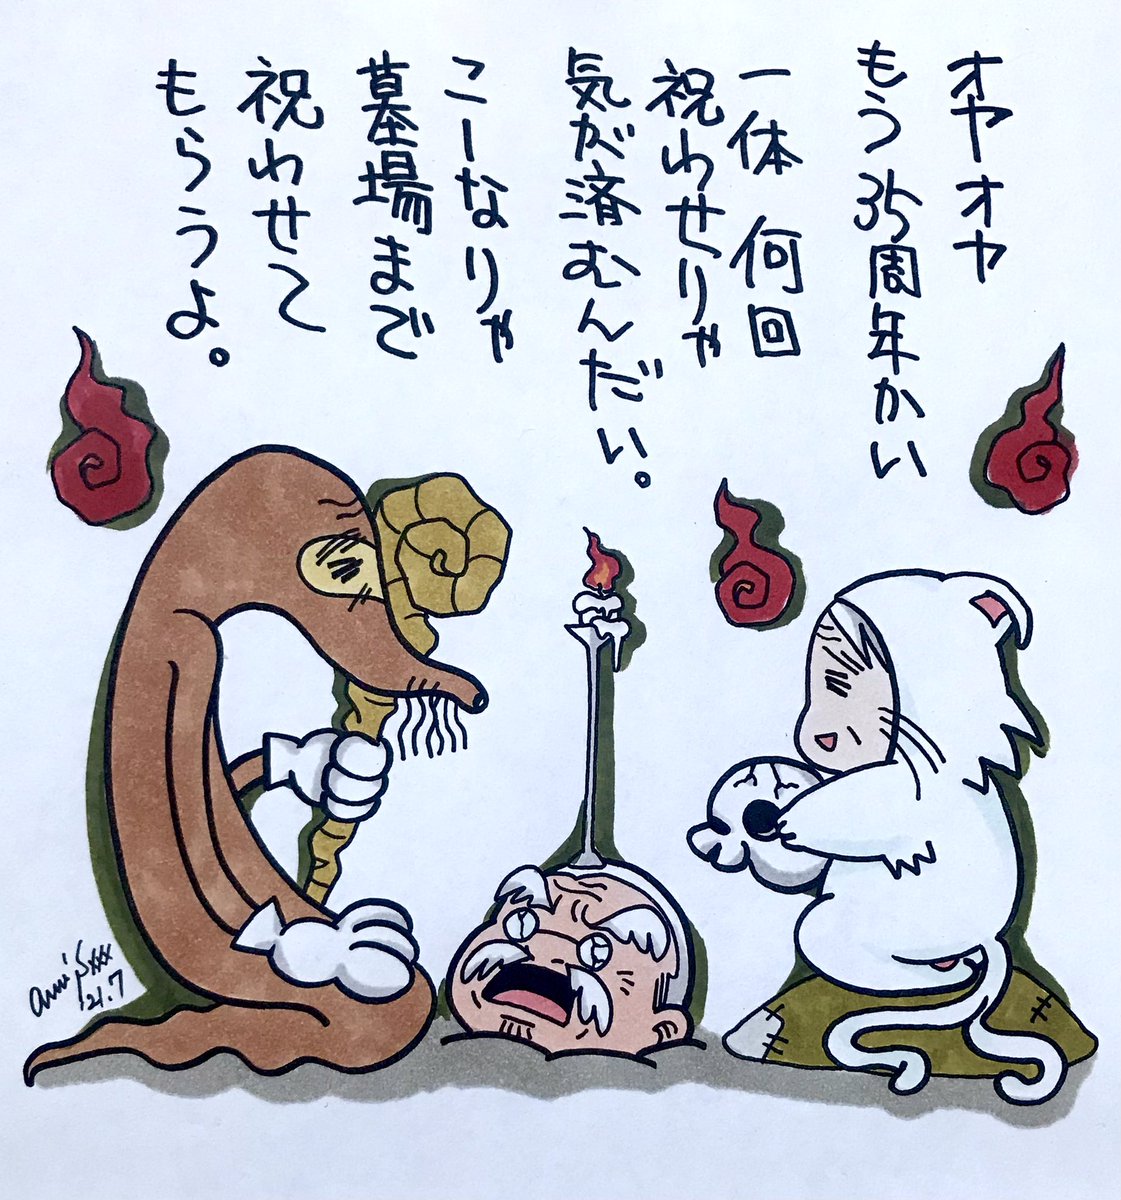 長崎の実家になぜか置いてあった、ドキばぐ狸のヌイグルミと、もはや何回祝いイラスト描かされたかわからぬファミ通35周年記念イラスト。 柴田亜美

#柴田亜美 #ドキばぐ #ファミ通 